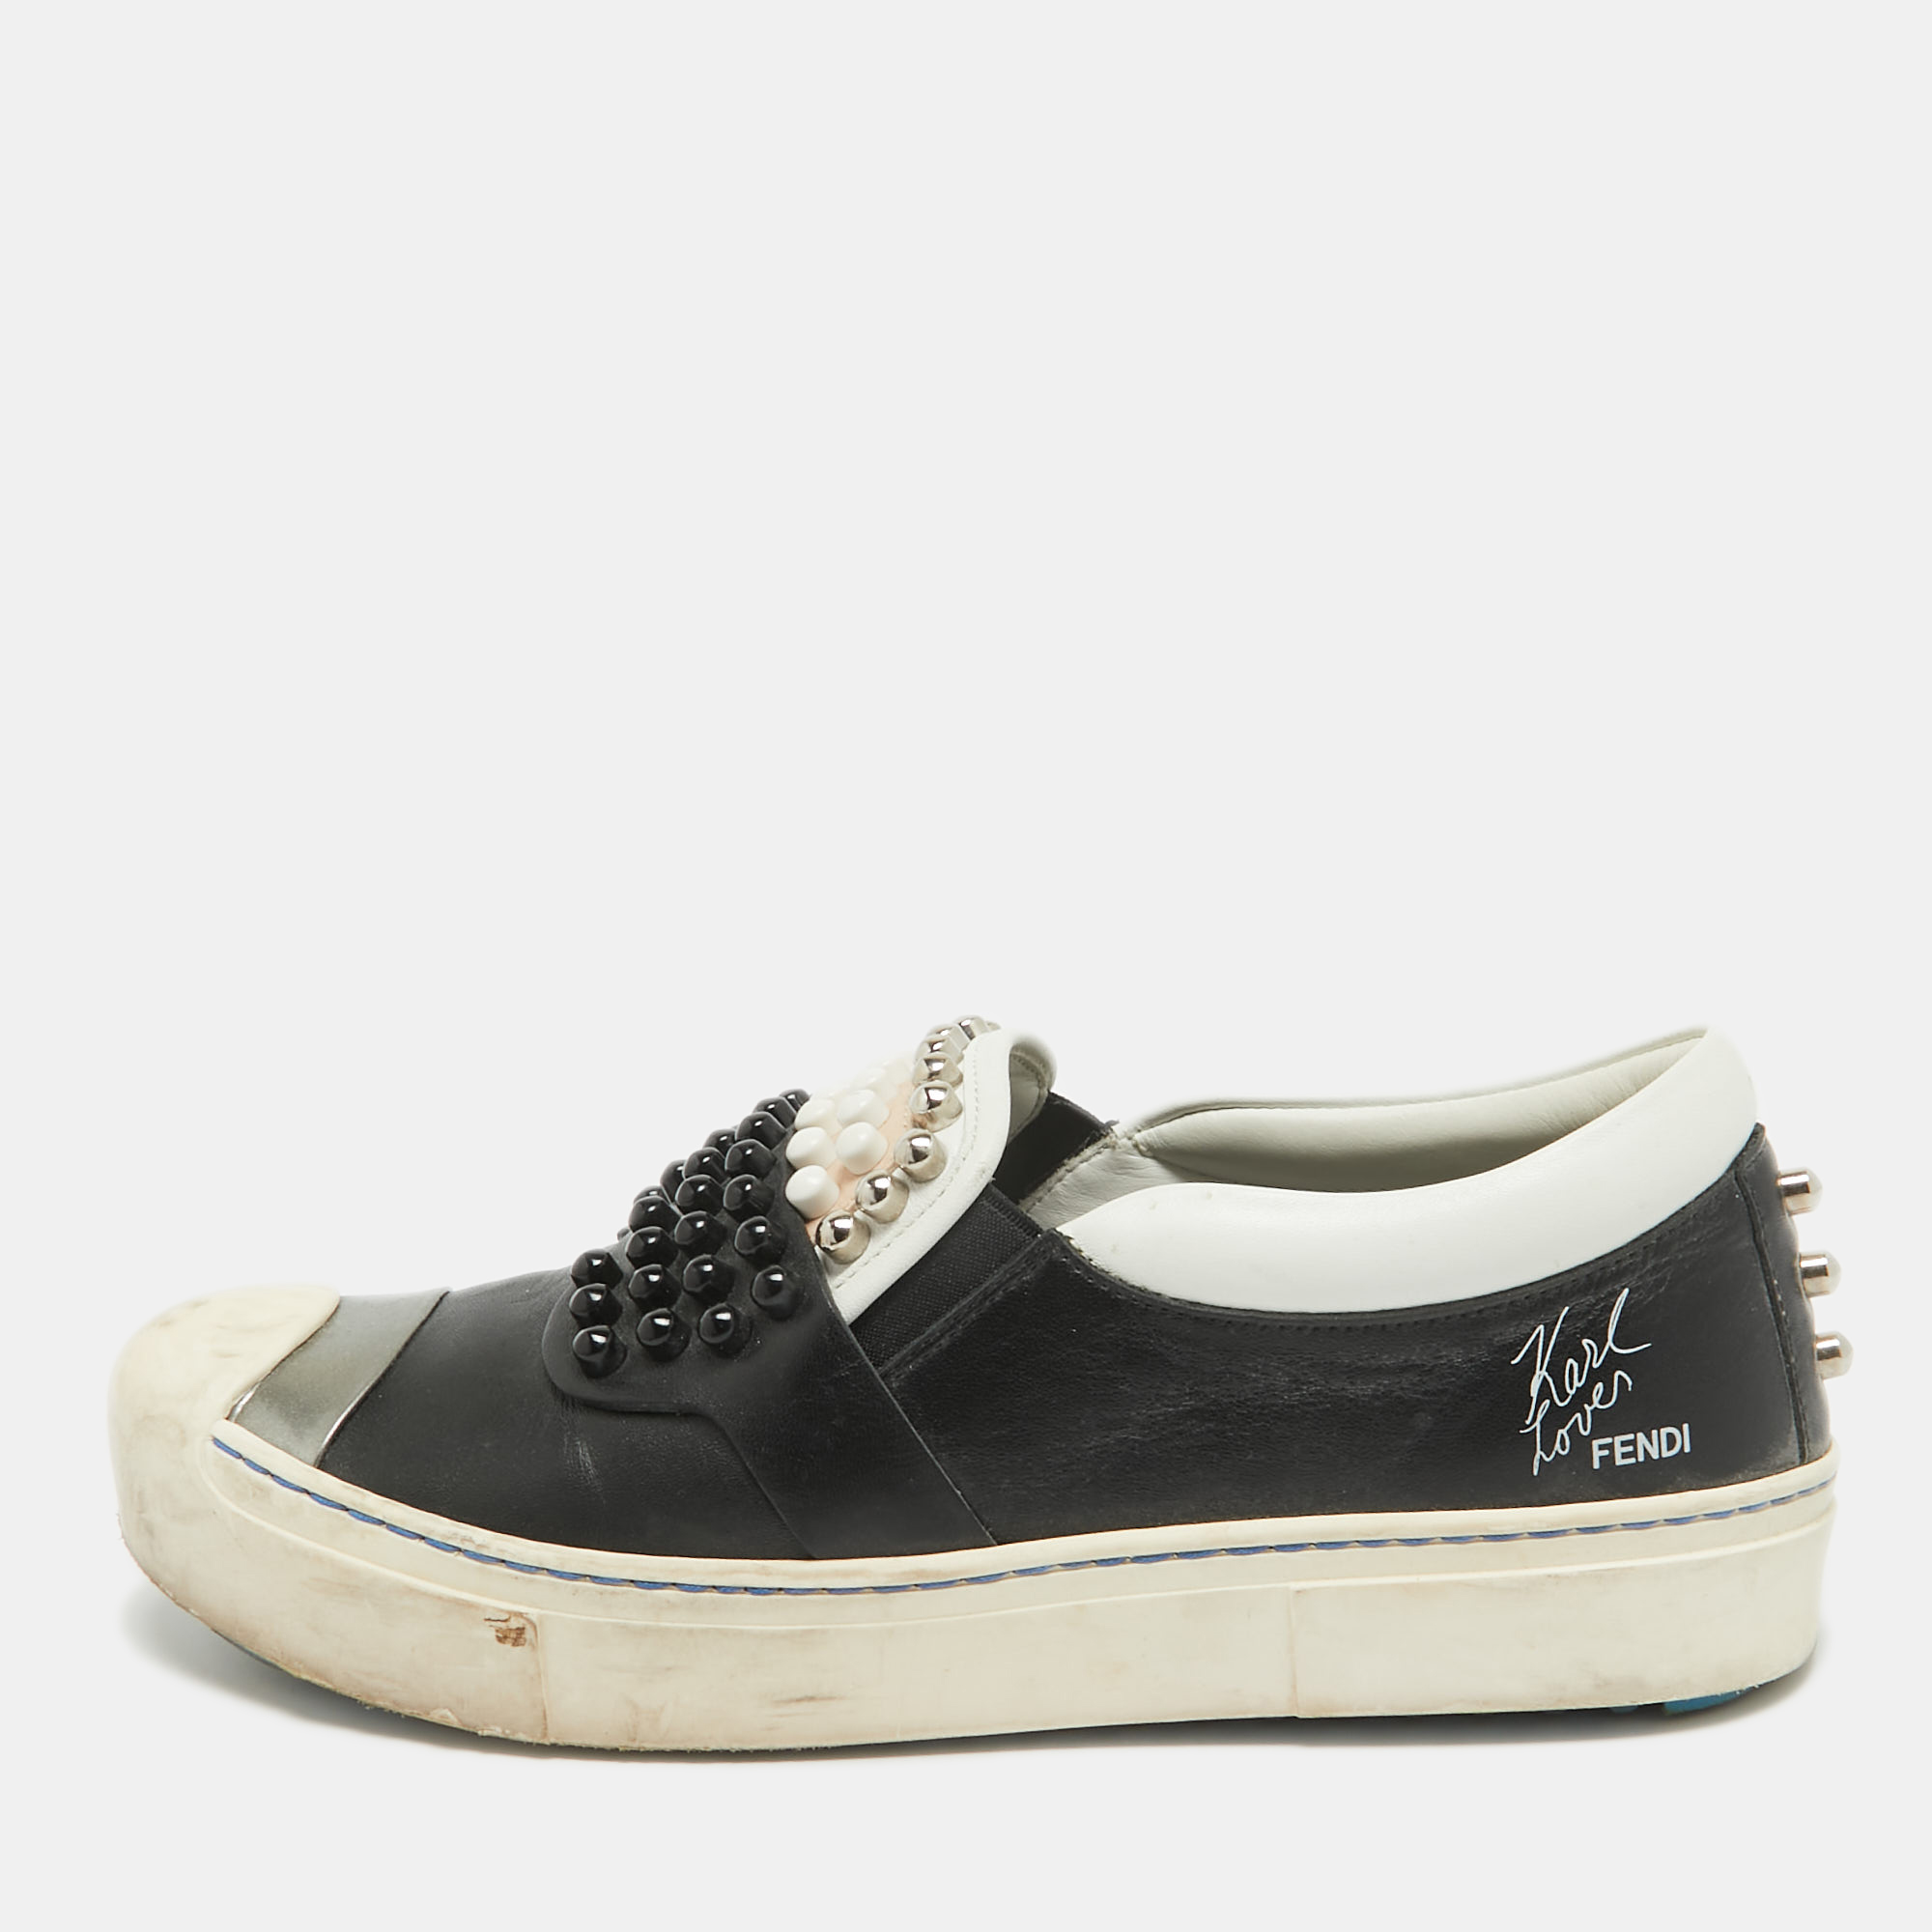 Fendi black/white leather studded karl lover slip on sneakers size 37